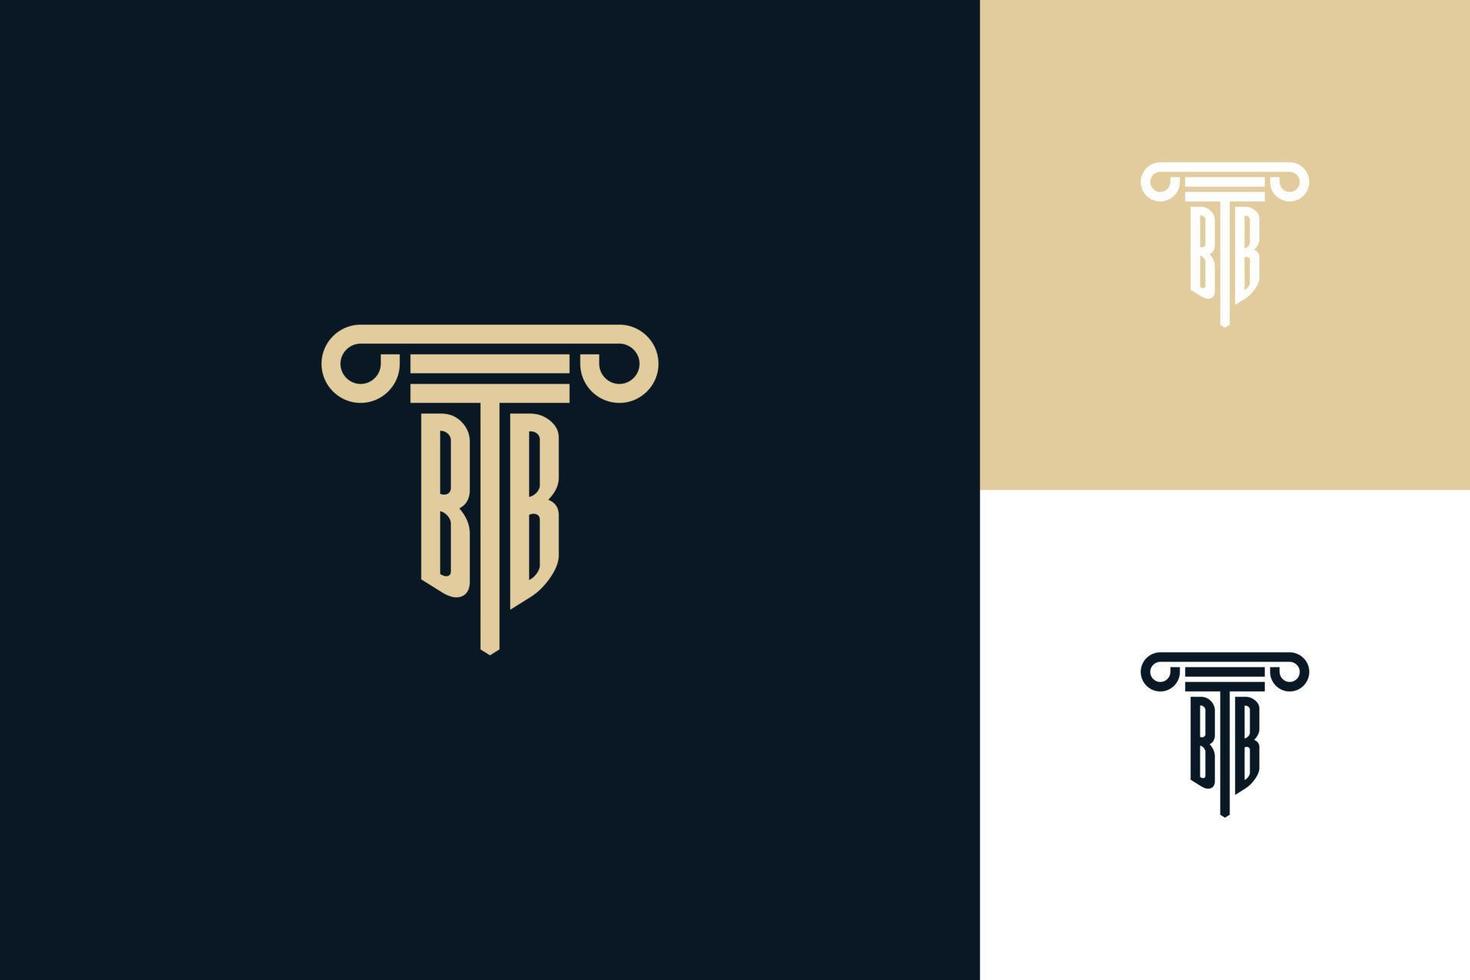 bb monogram initialen ontwerp logo. advocaat logo ontwerpideeën vector